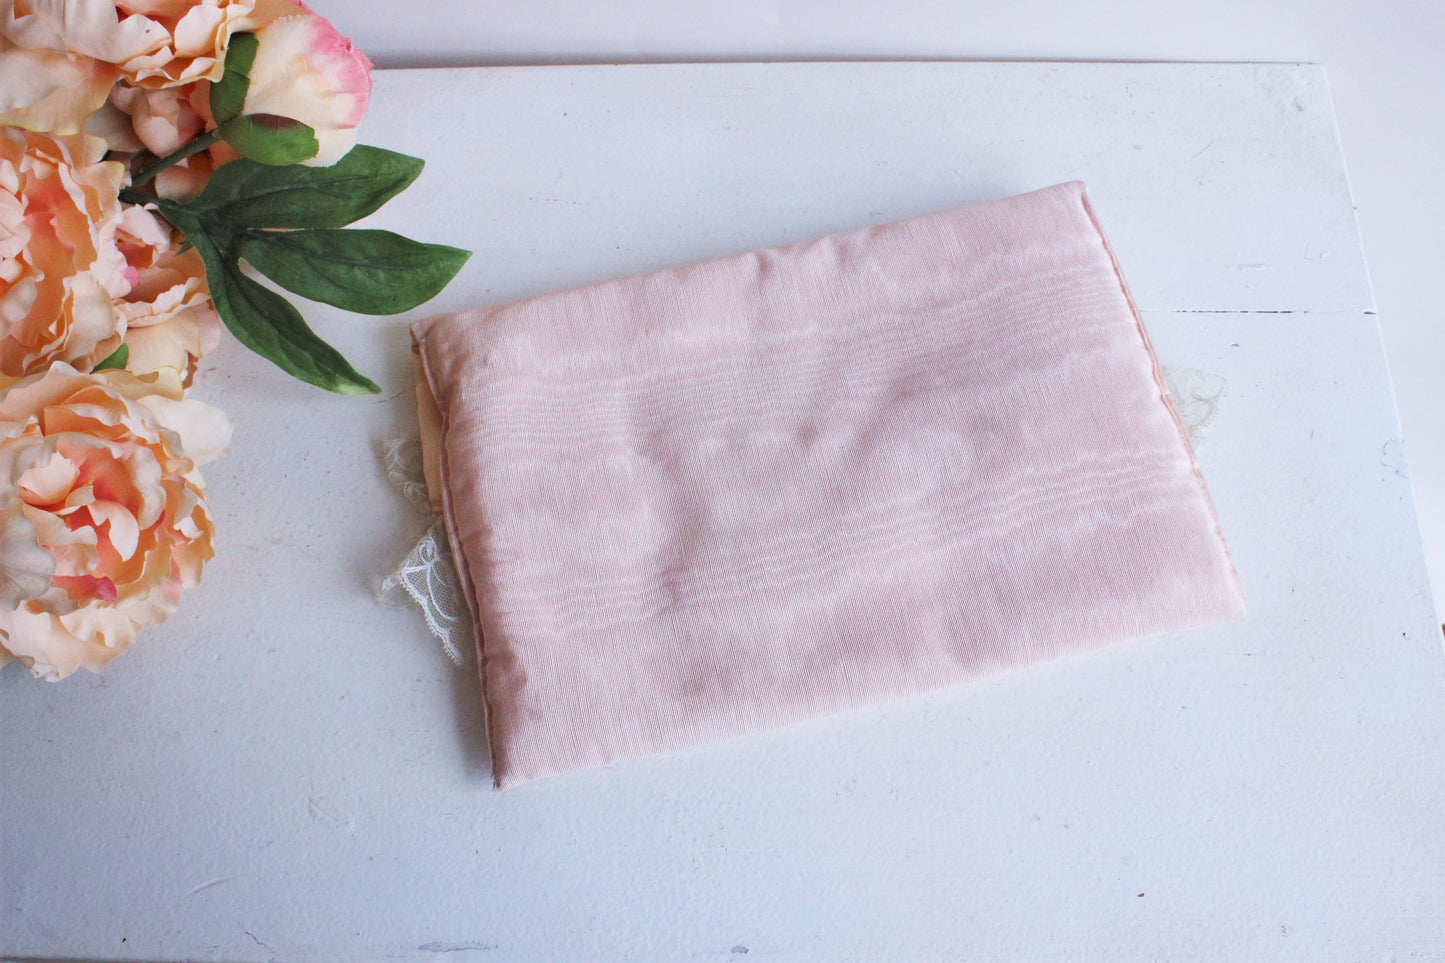 Vintage 1990s Victoria's Secret Pink Moire Taffeta Lingerie Bag